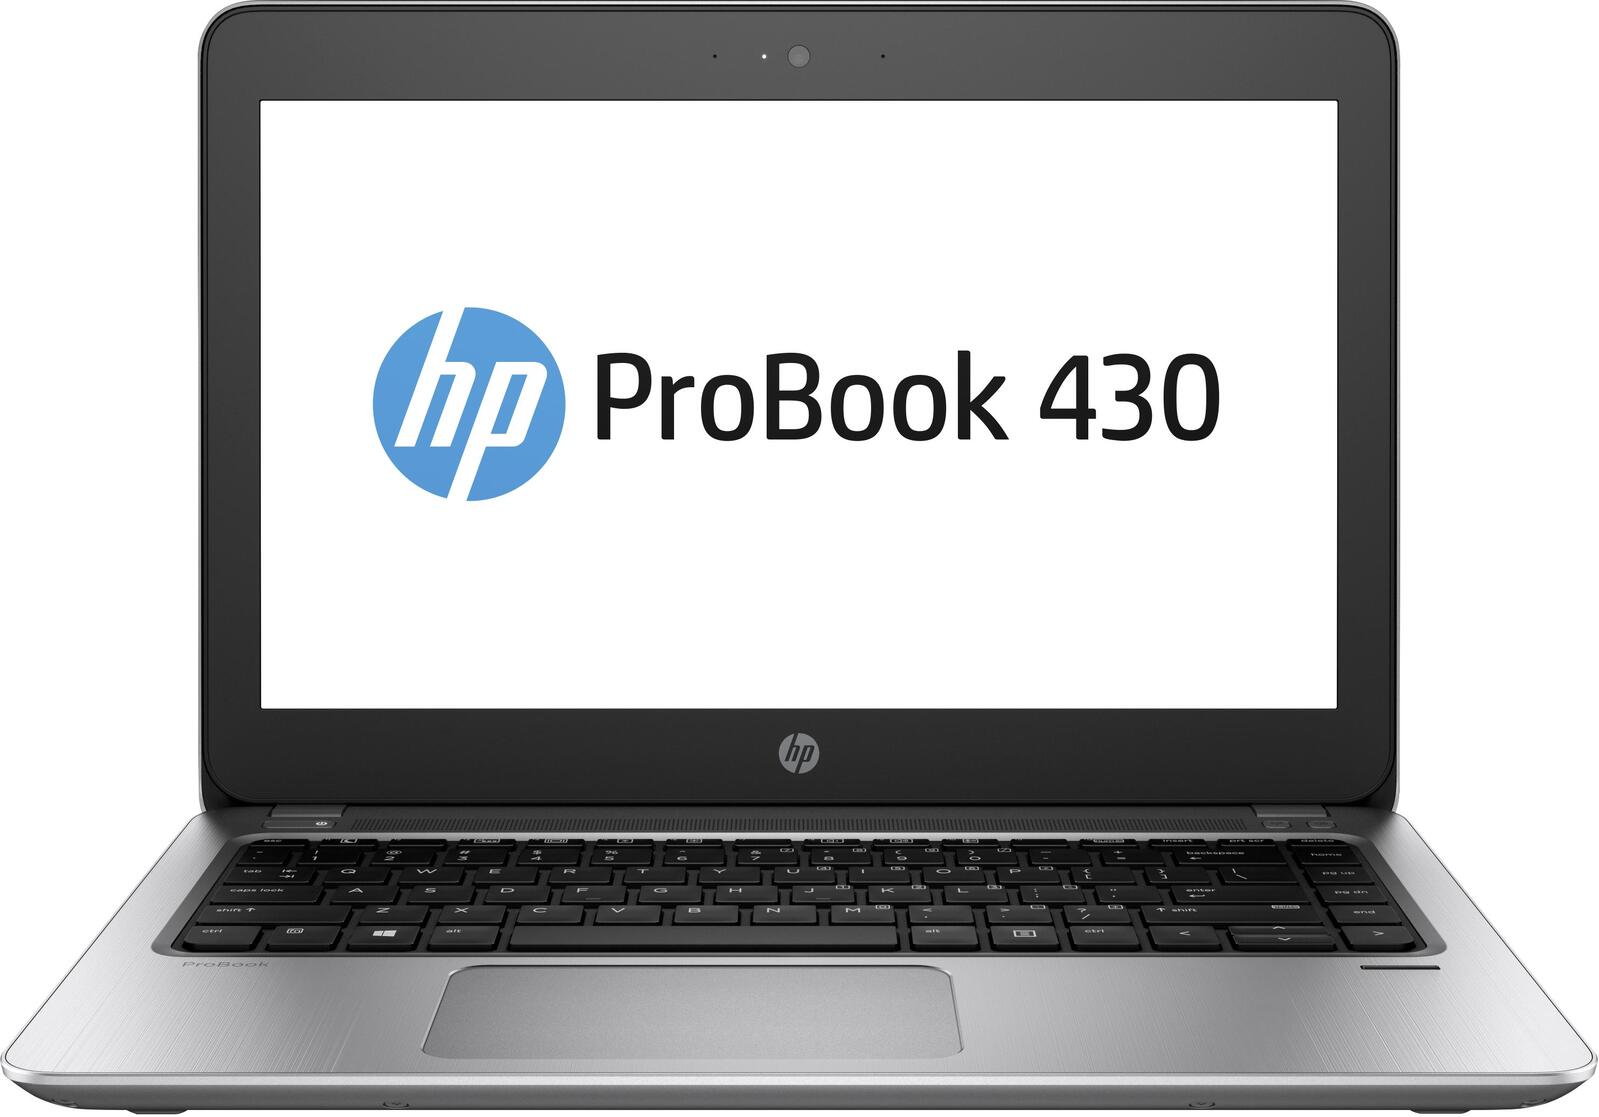 HP ProBook 430 G4 Intel i5 7200U 2.50GHz 8GB RAM 256GB SSD 13.3" Win 10